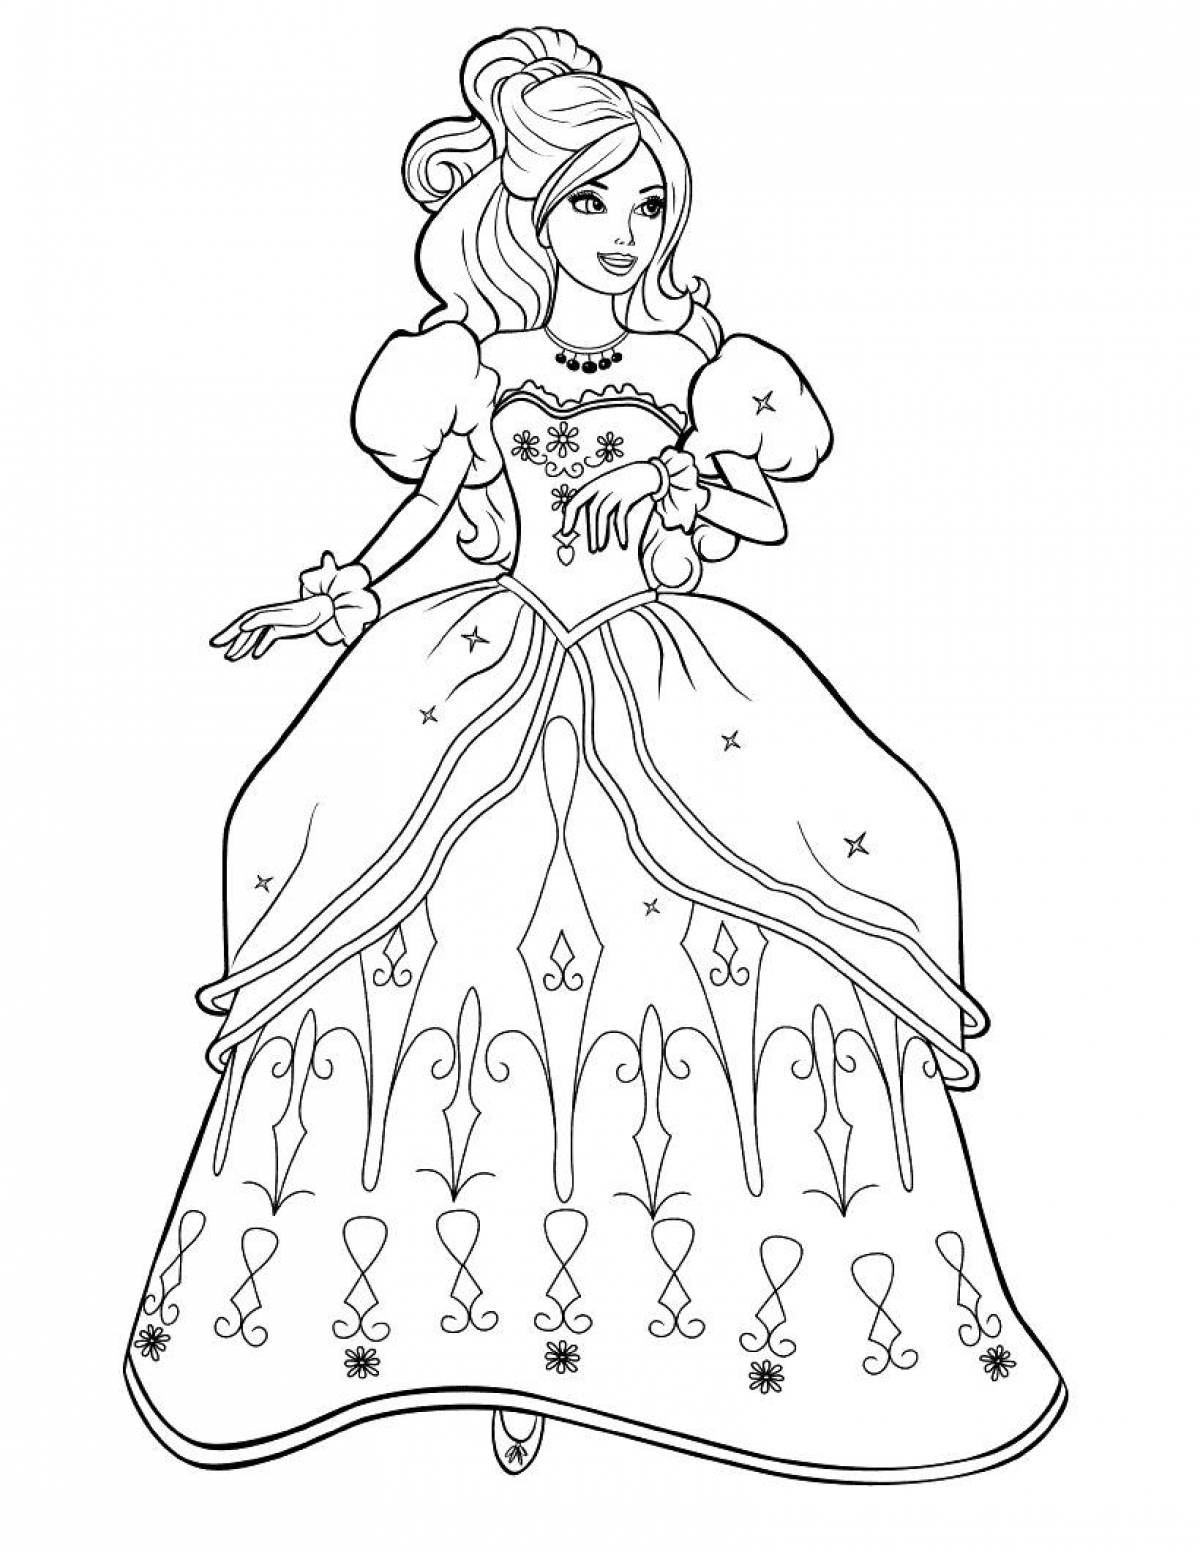 Princesses in beautiful dresses #7